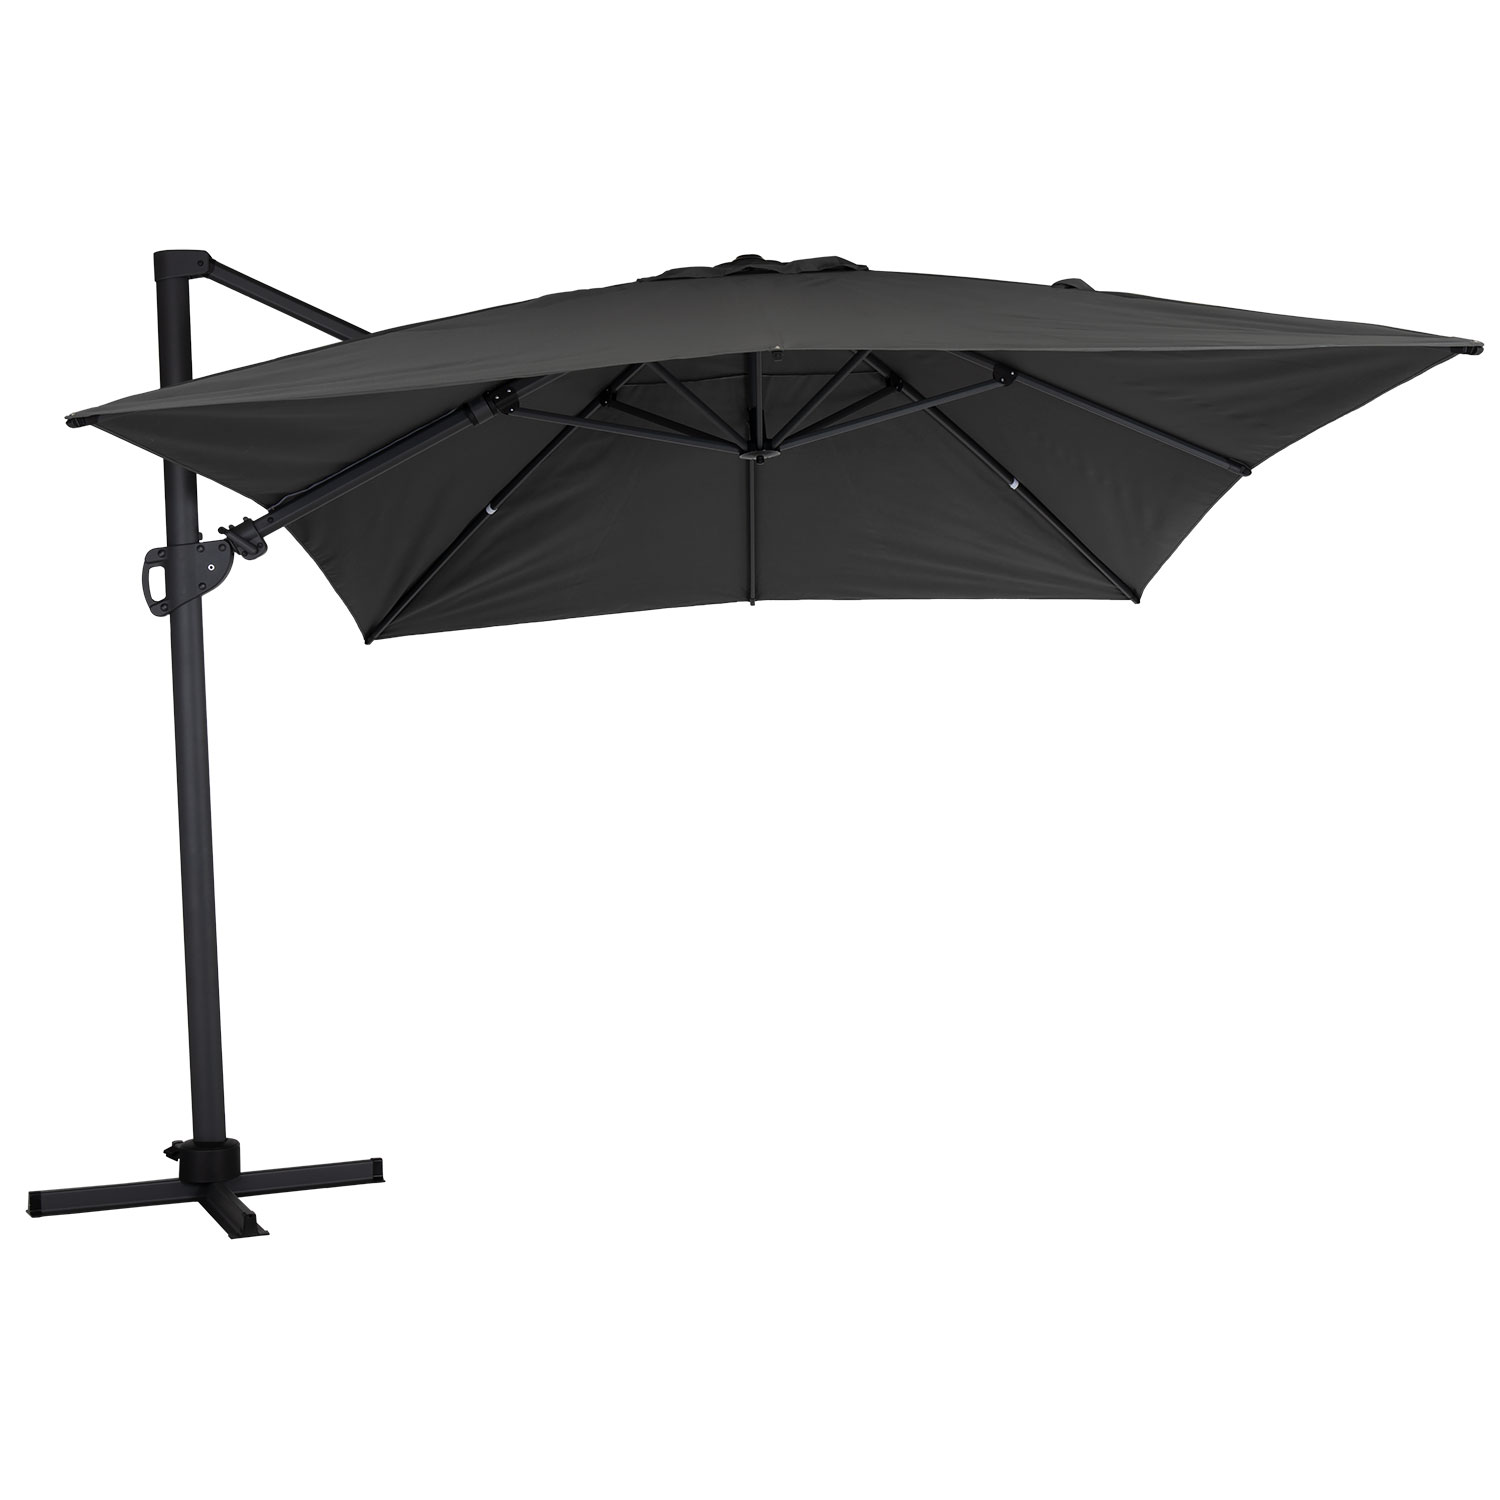 Brafab Varallo frihängande parasoll 300×400 cm antracit/grå